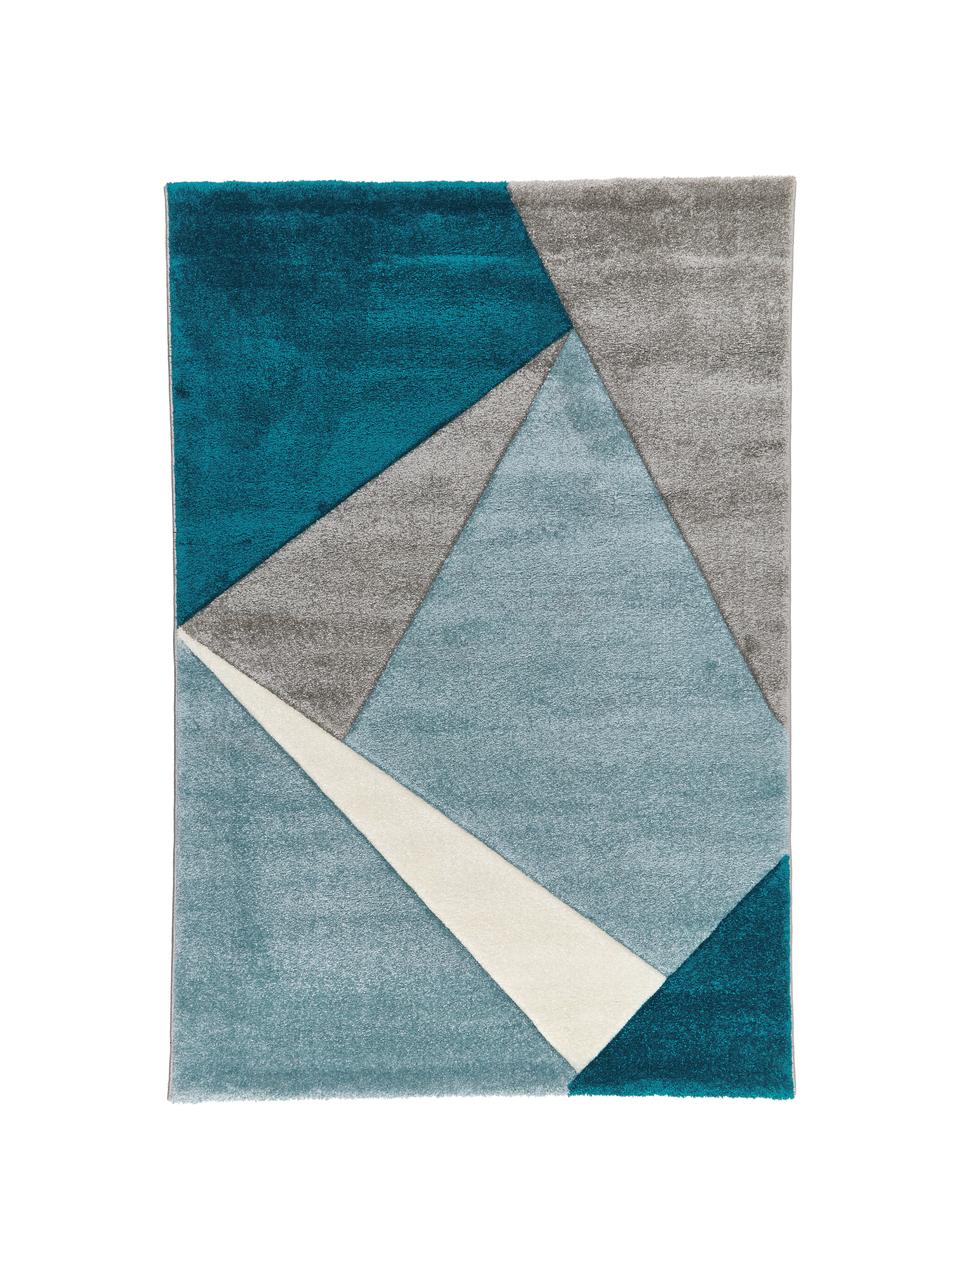 Teppich My Broadway mit geometrischem Muster in Beige-Blau, Flor: 100% Polypropylen, Blautöne, Beige, Creme, B 200 x L 290 cm (Größe L)